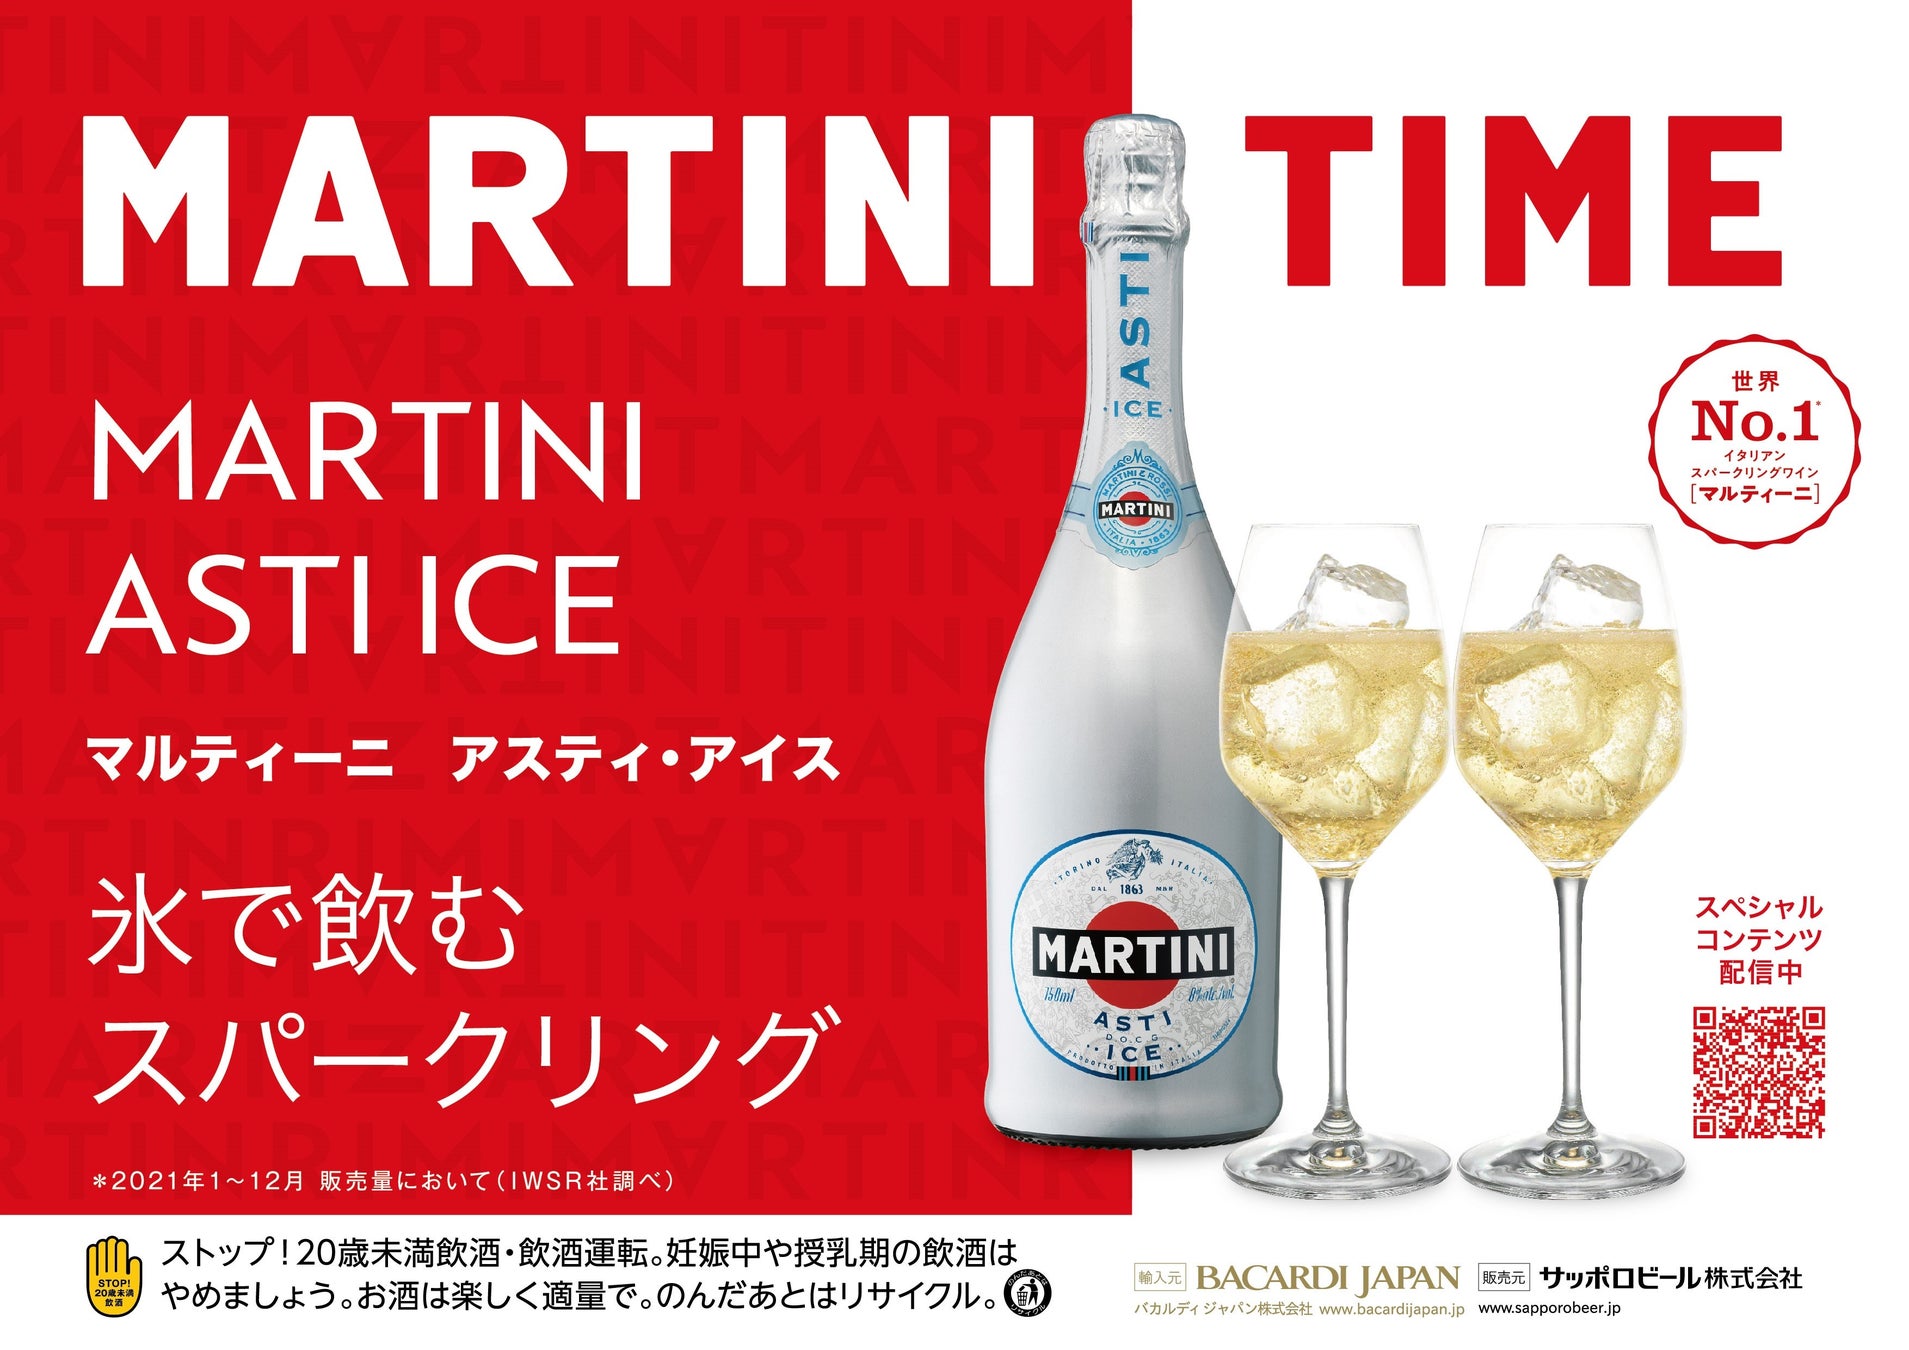 「マルティーニ アスティ・アイス」数量限定発売夏にぴったり“氷を入れて楽しむ” スパークリングワイン